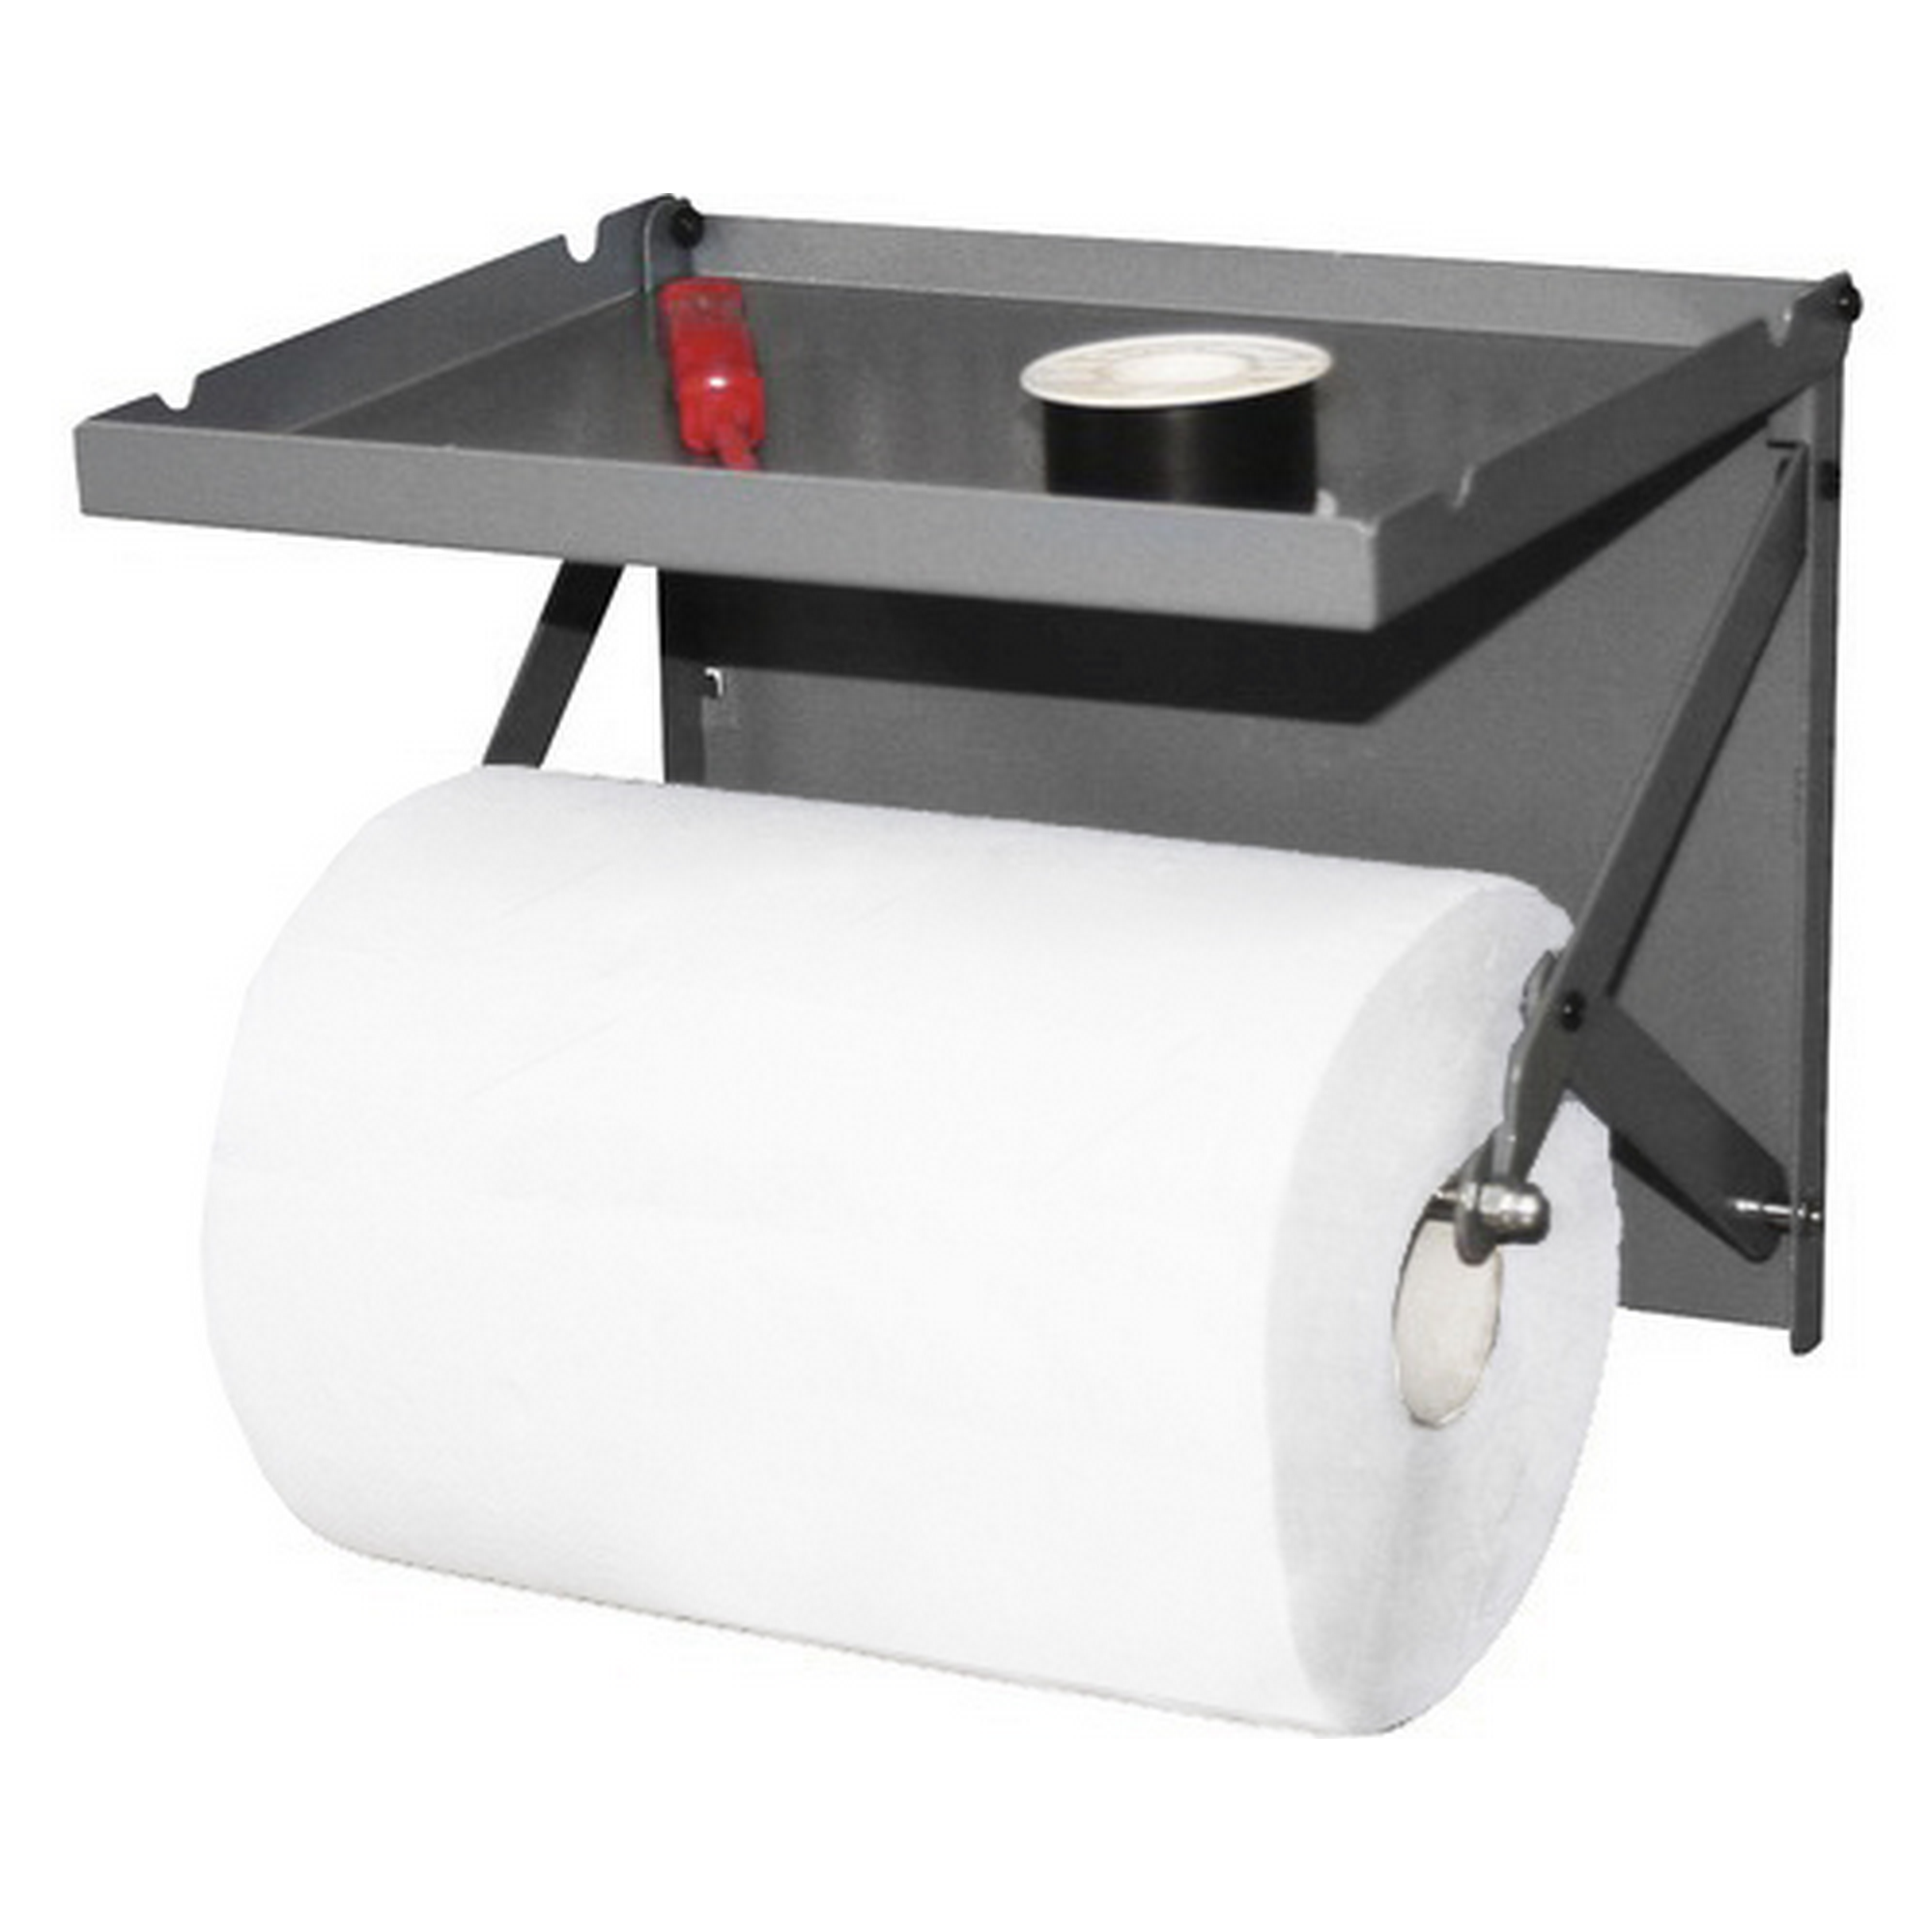 Papierrollenhalter mit Ablagefach aus Stahlblech + product picture